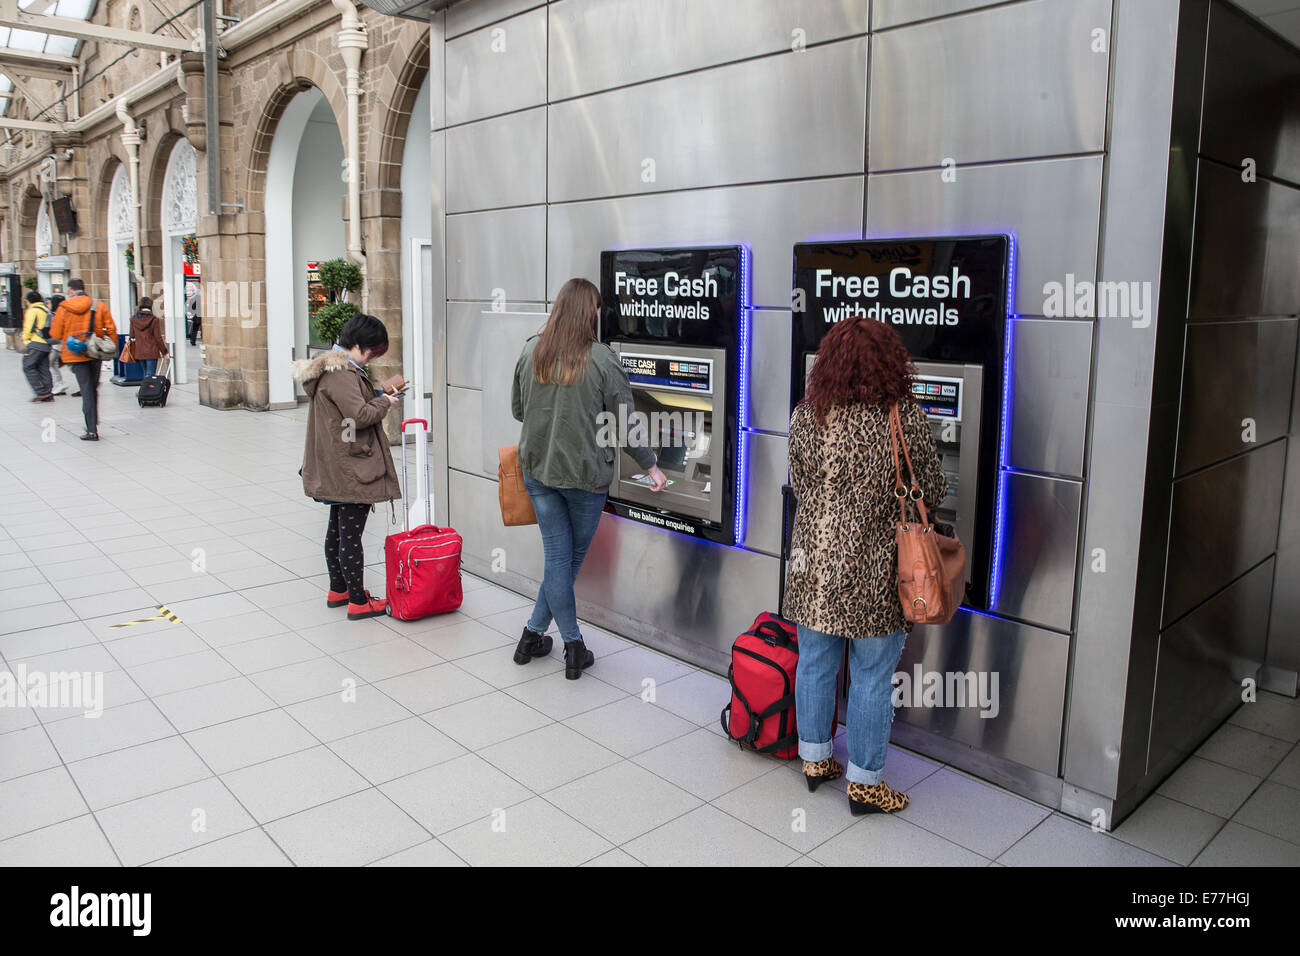 Les voyageurs qui utilisent gratuitement des retraits d'espèces au guichet automatique un guichet automatique en gare d'Angleterre UK Banque D'Images